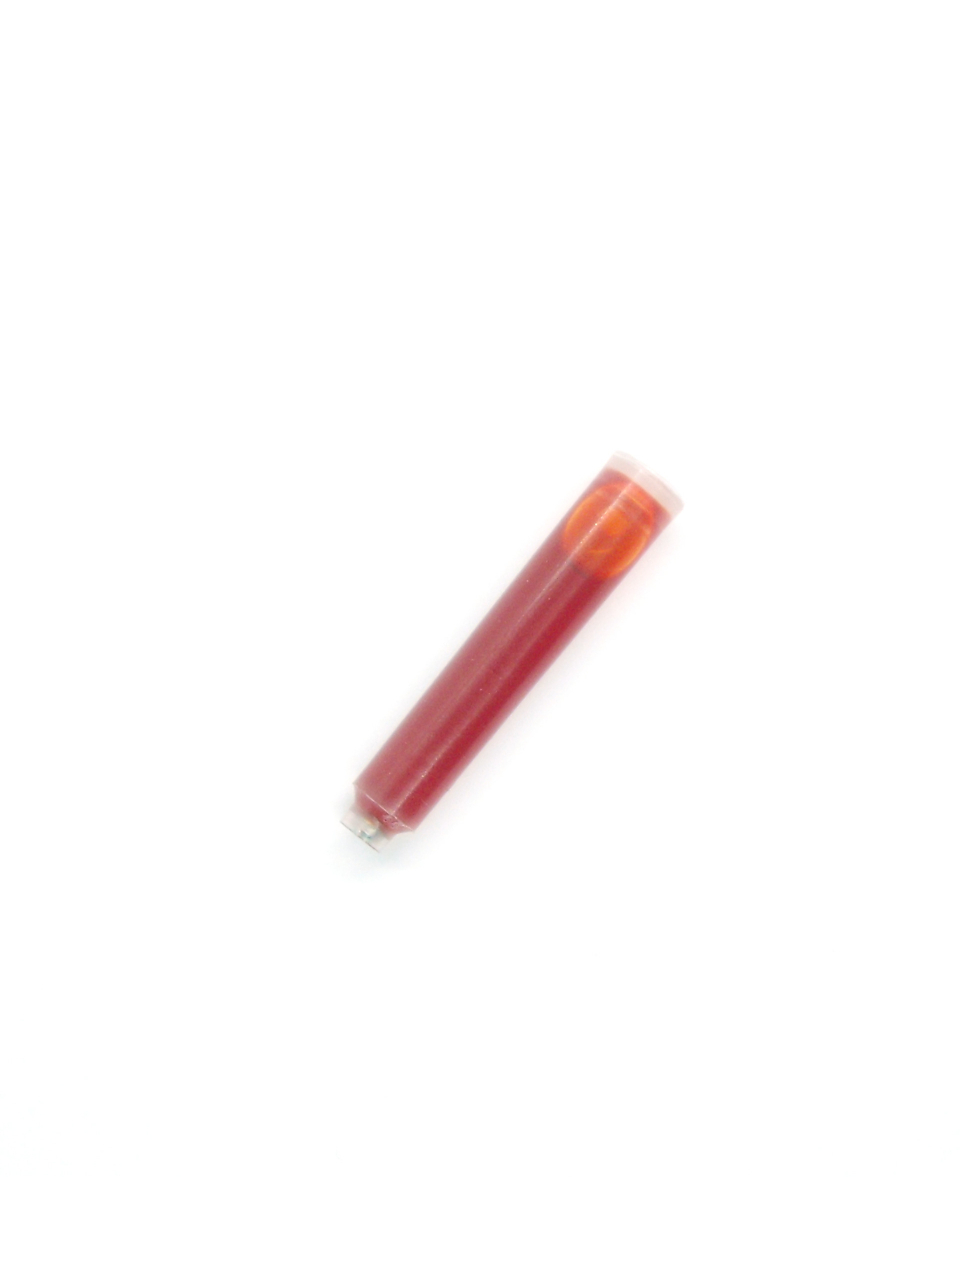 Ink Cartridges For Lanbitou Fountain Pens (Orange)